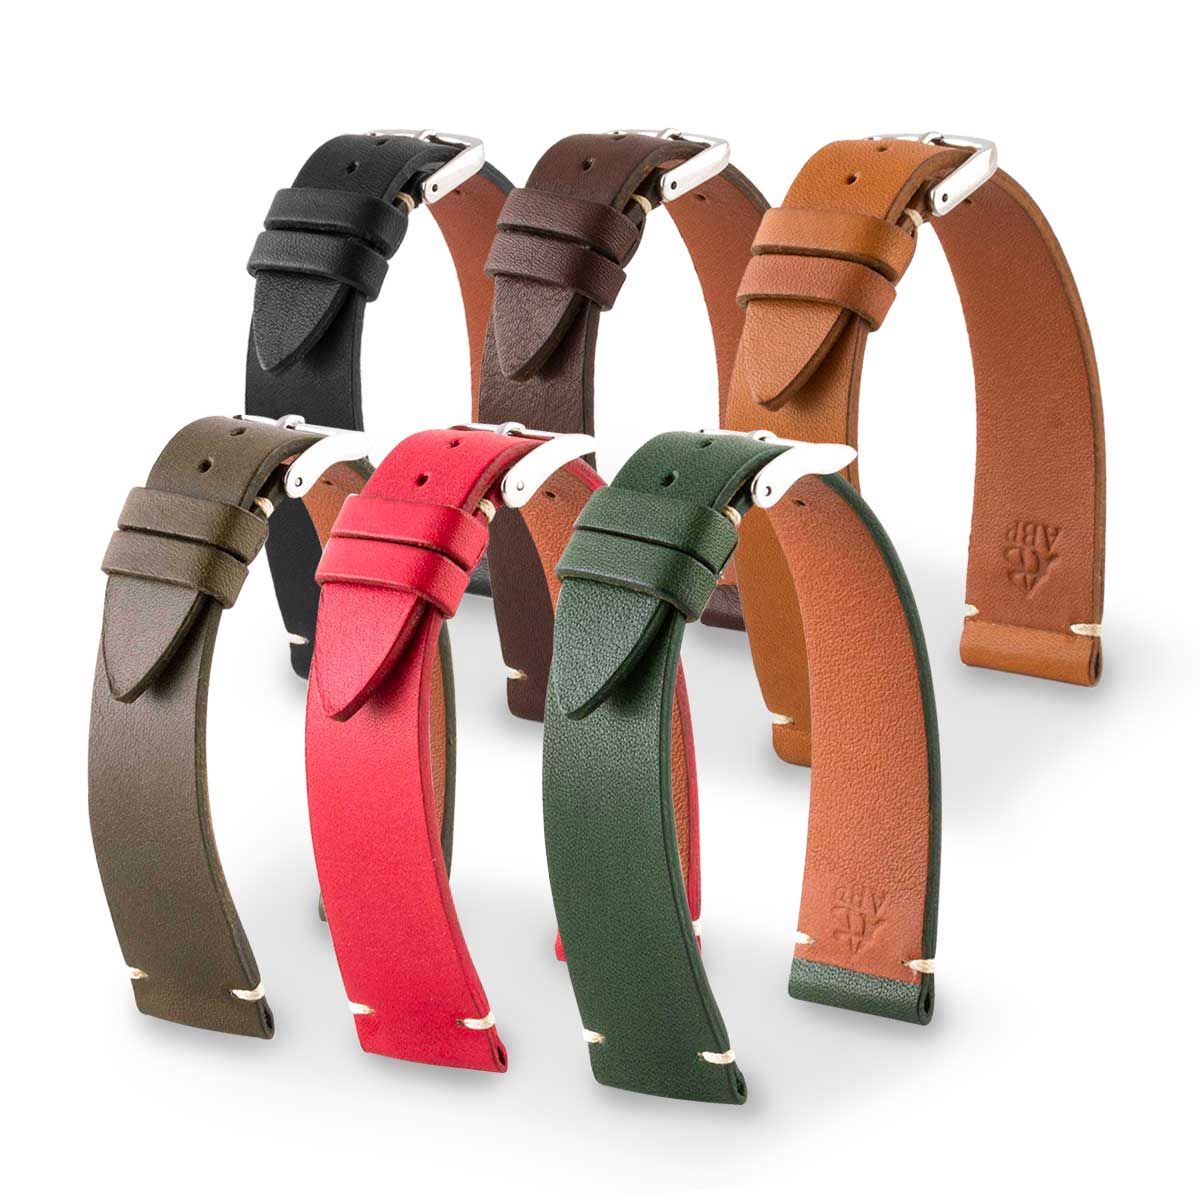 Bracelet "Retro" - Bracelet montre cuir - Veau barenia (noir, marron, kaki, rouge, vert) - watch band leather strap - ABP Concept -